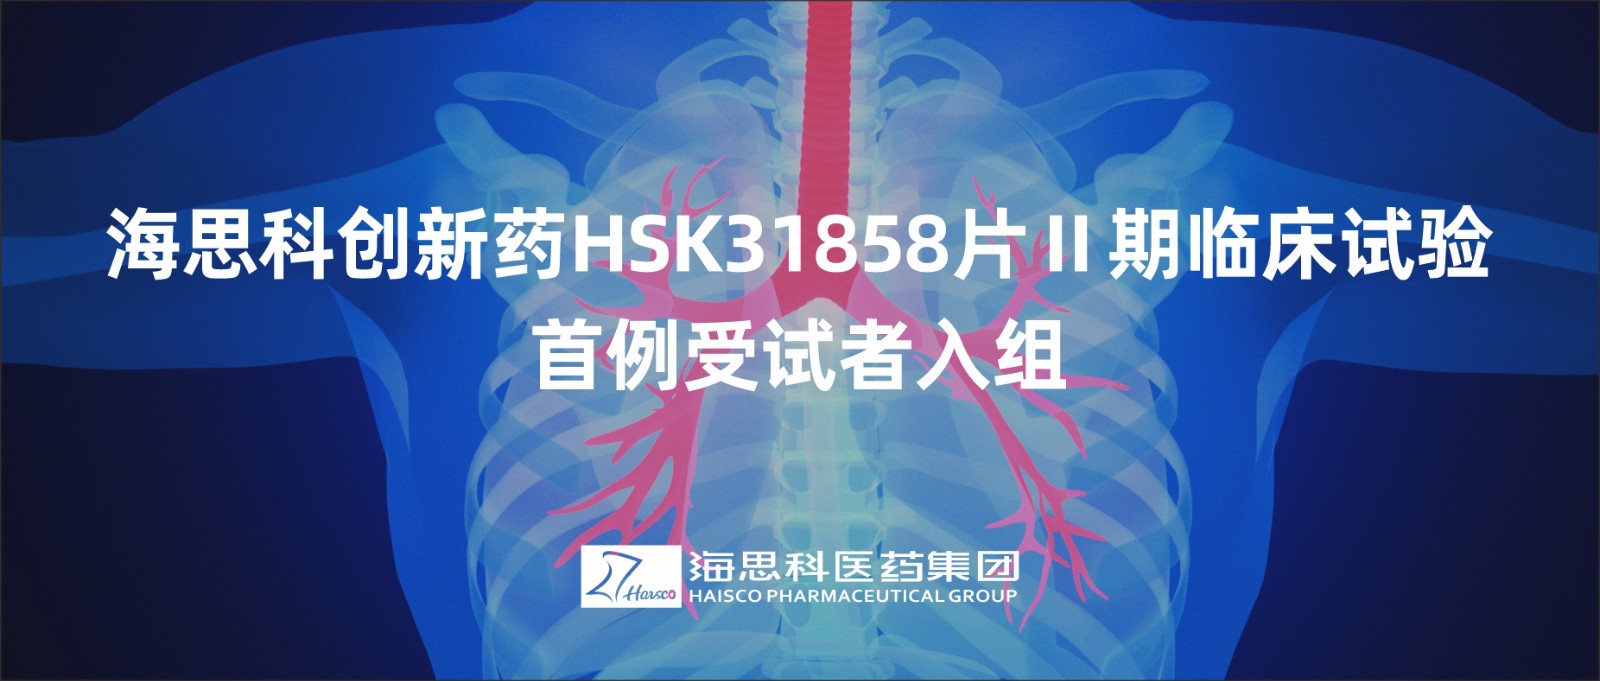 明升ms88创新药HSK31858片Ⅱ期临床试验首例受试者入组